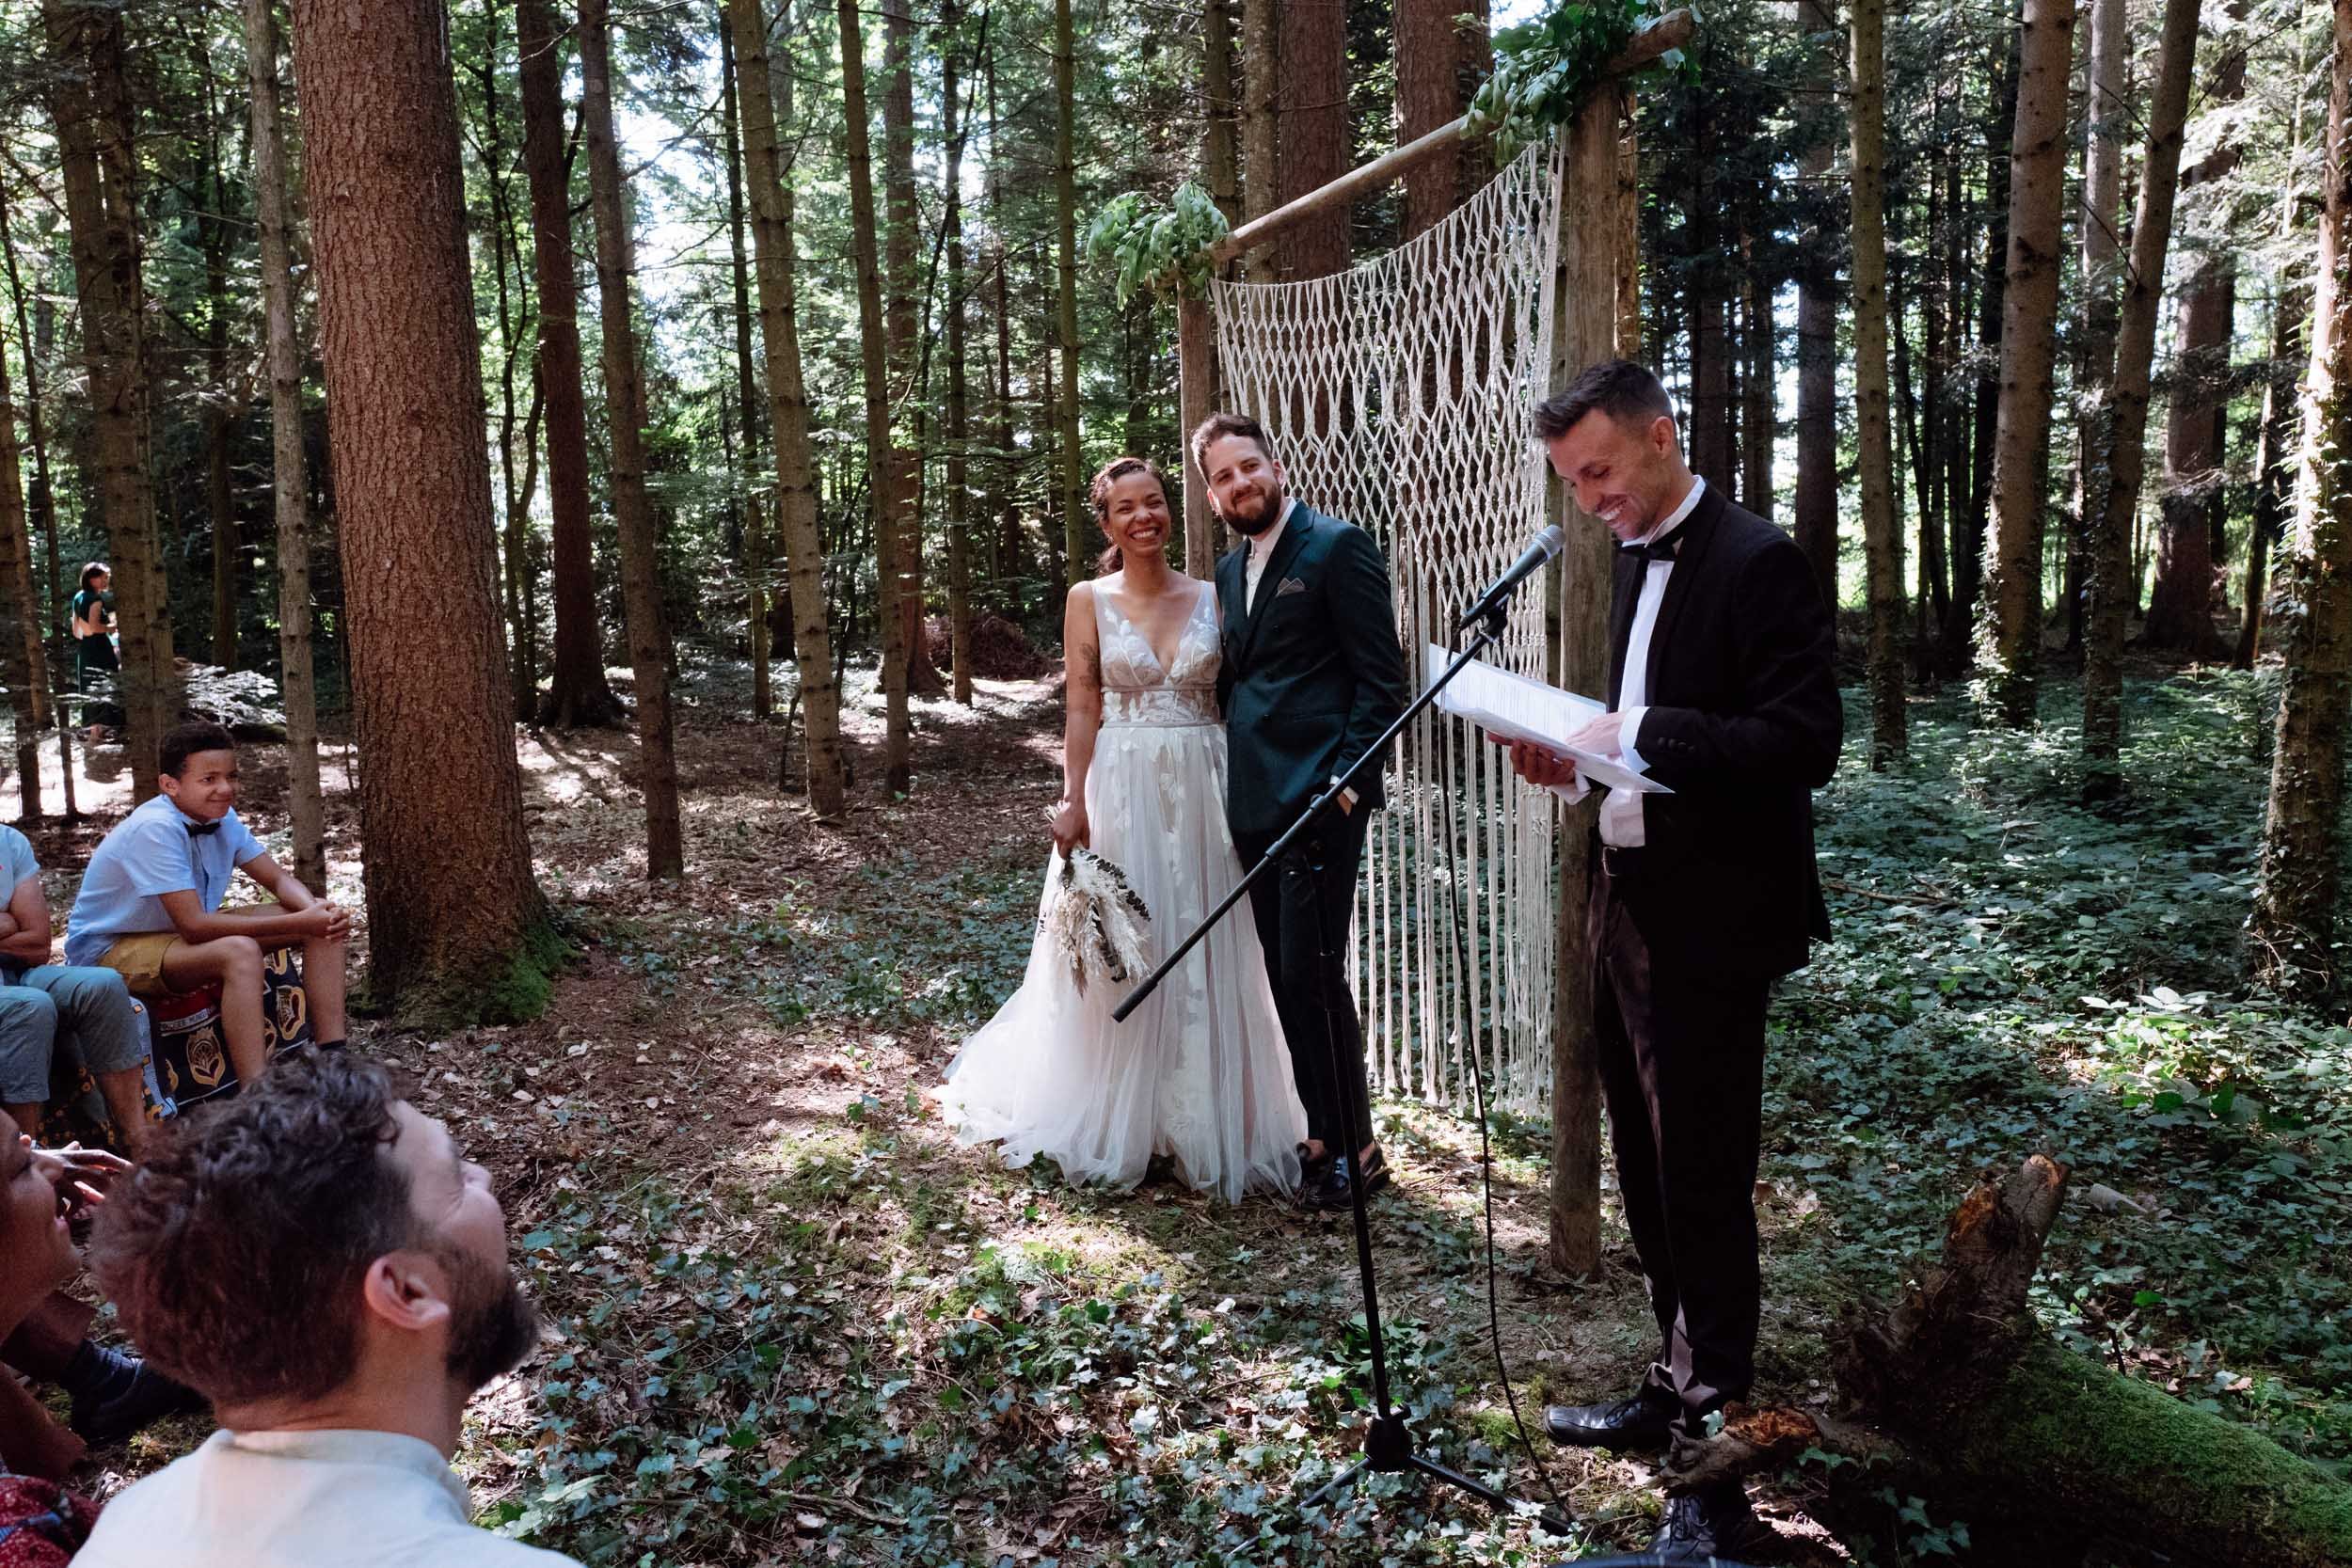 s-s-zurich-wedding-photography-2.jpg